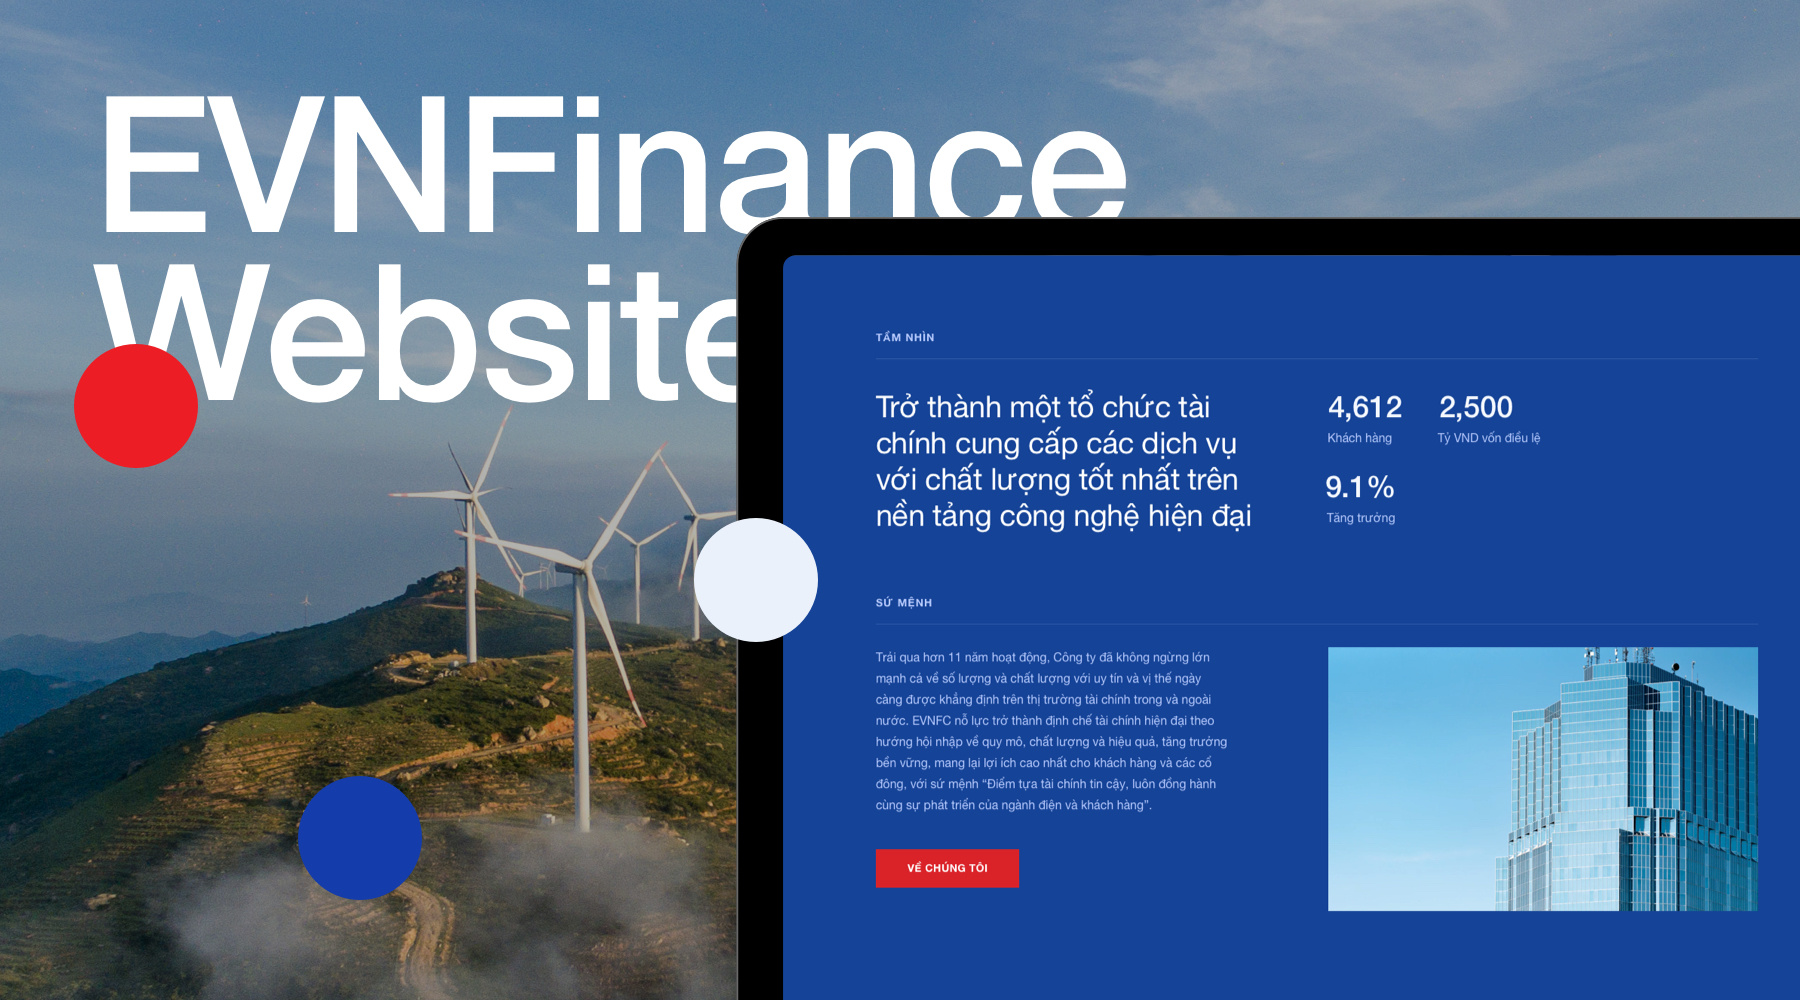 EVNFinance website ngân hàng bán buôn 